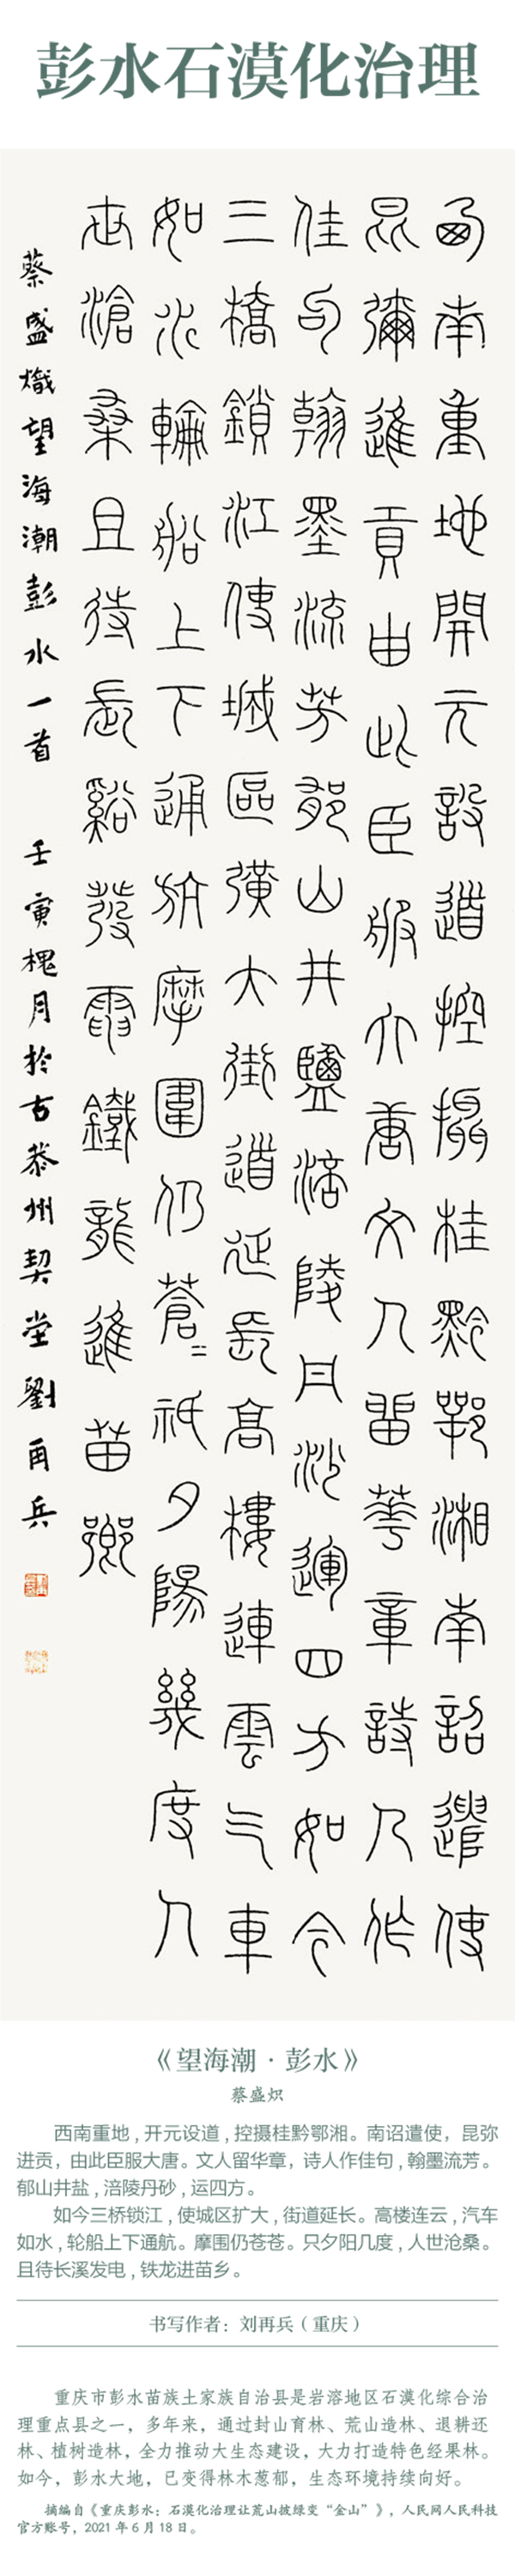 中国书协主题创作书法系列展——美丽中国插图17中国题字网